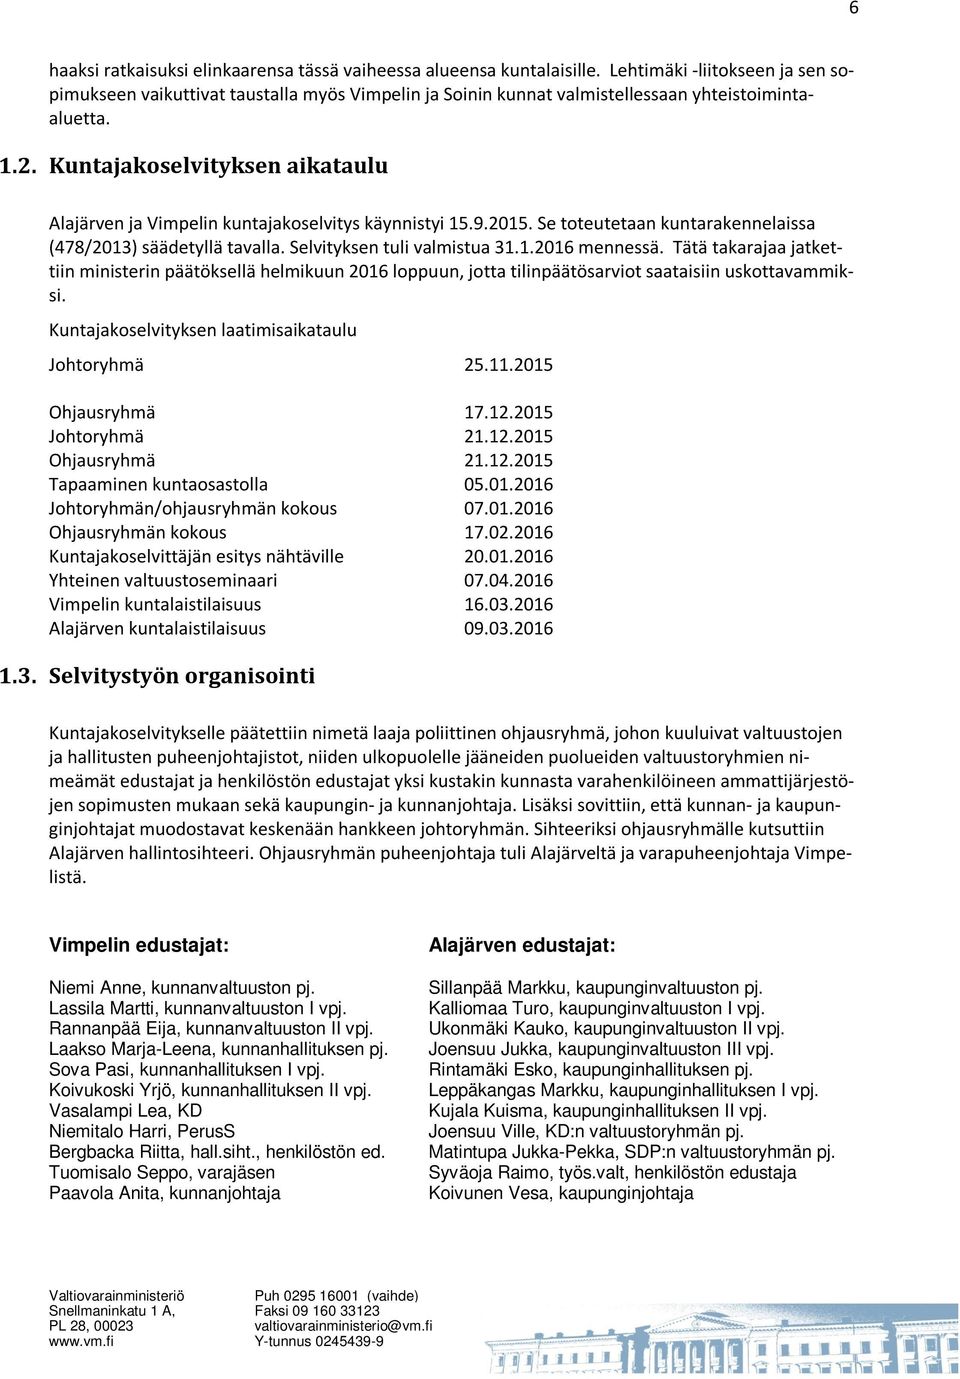 Kuntajakoselvityksen aikataulu Alajärven ja Vimpelin kuntajakoselvitys käynnistyi 15.9.2015. Se toteutetaan kuntarakennelaissa (478/2013) säädetyllä tavalla. Selvityksen tuli valmistua 31.1.2016 mennessä.